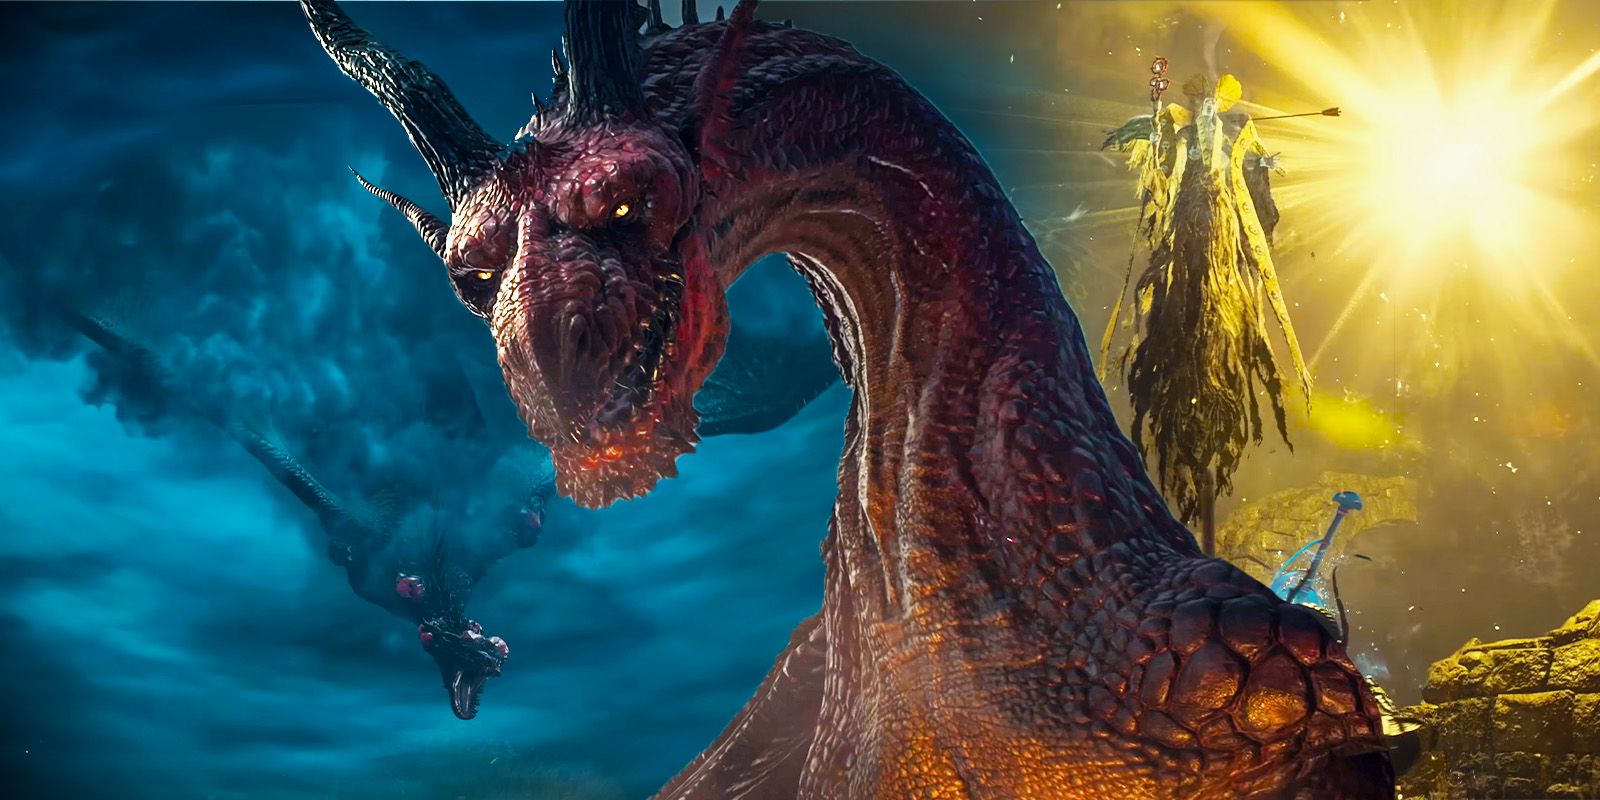 Dragon's Dogma 2 keyart trailer with a dragon